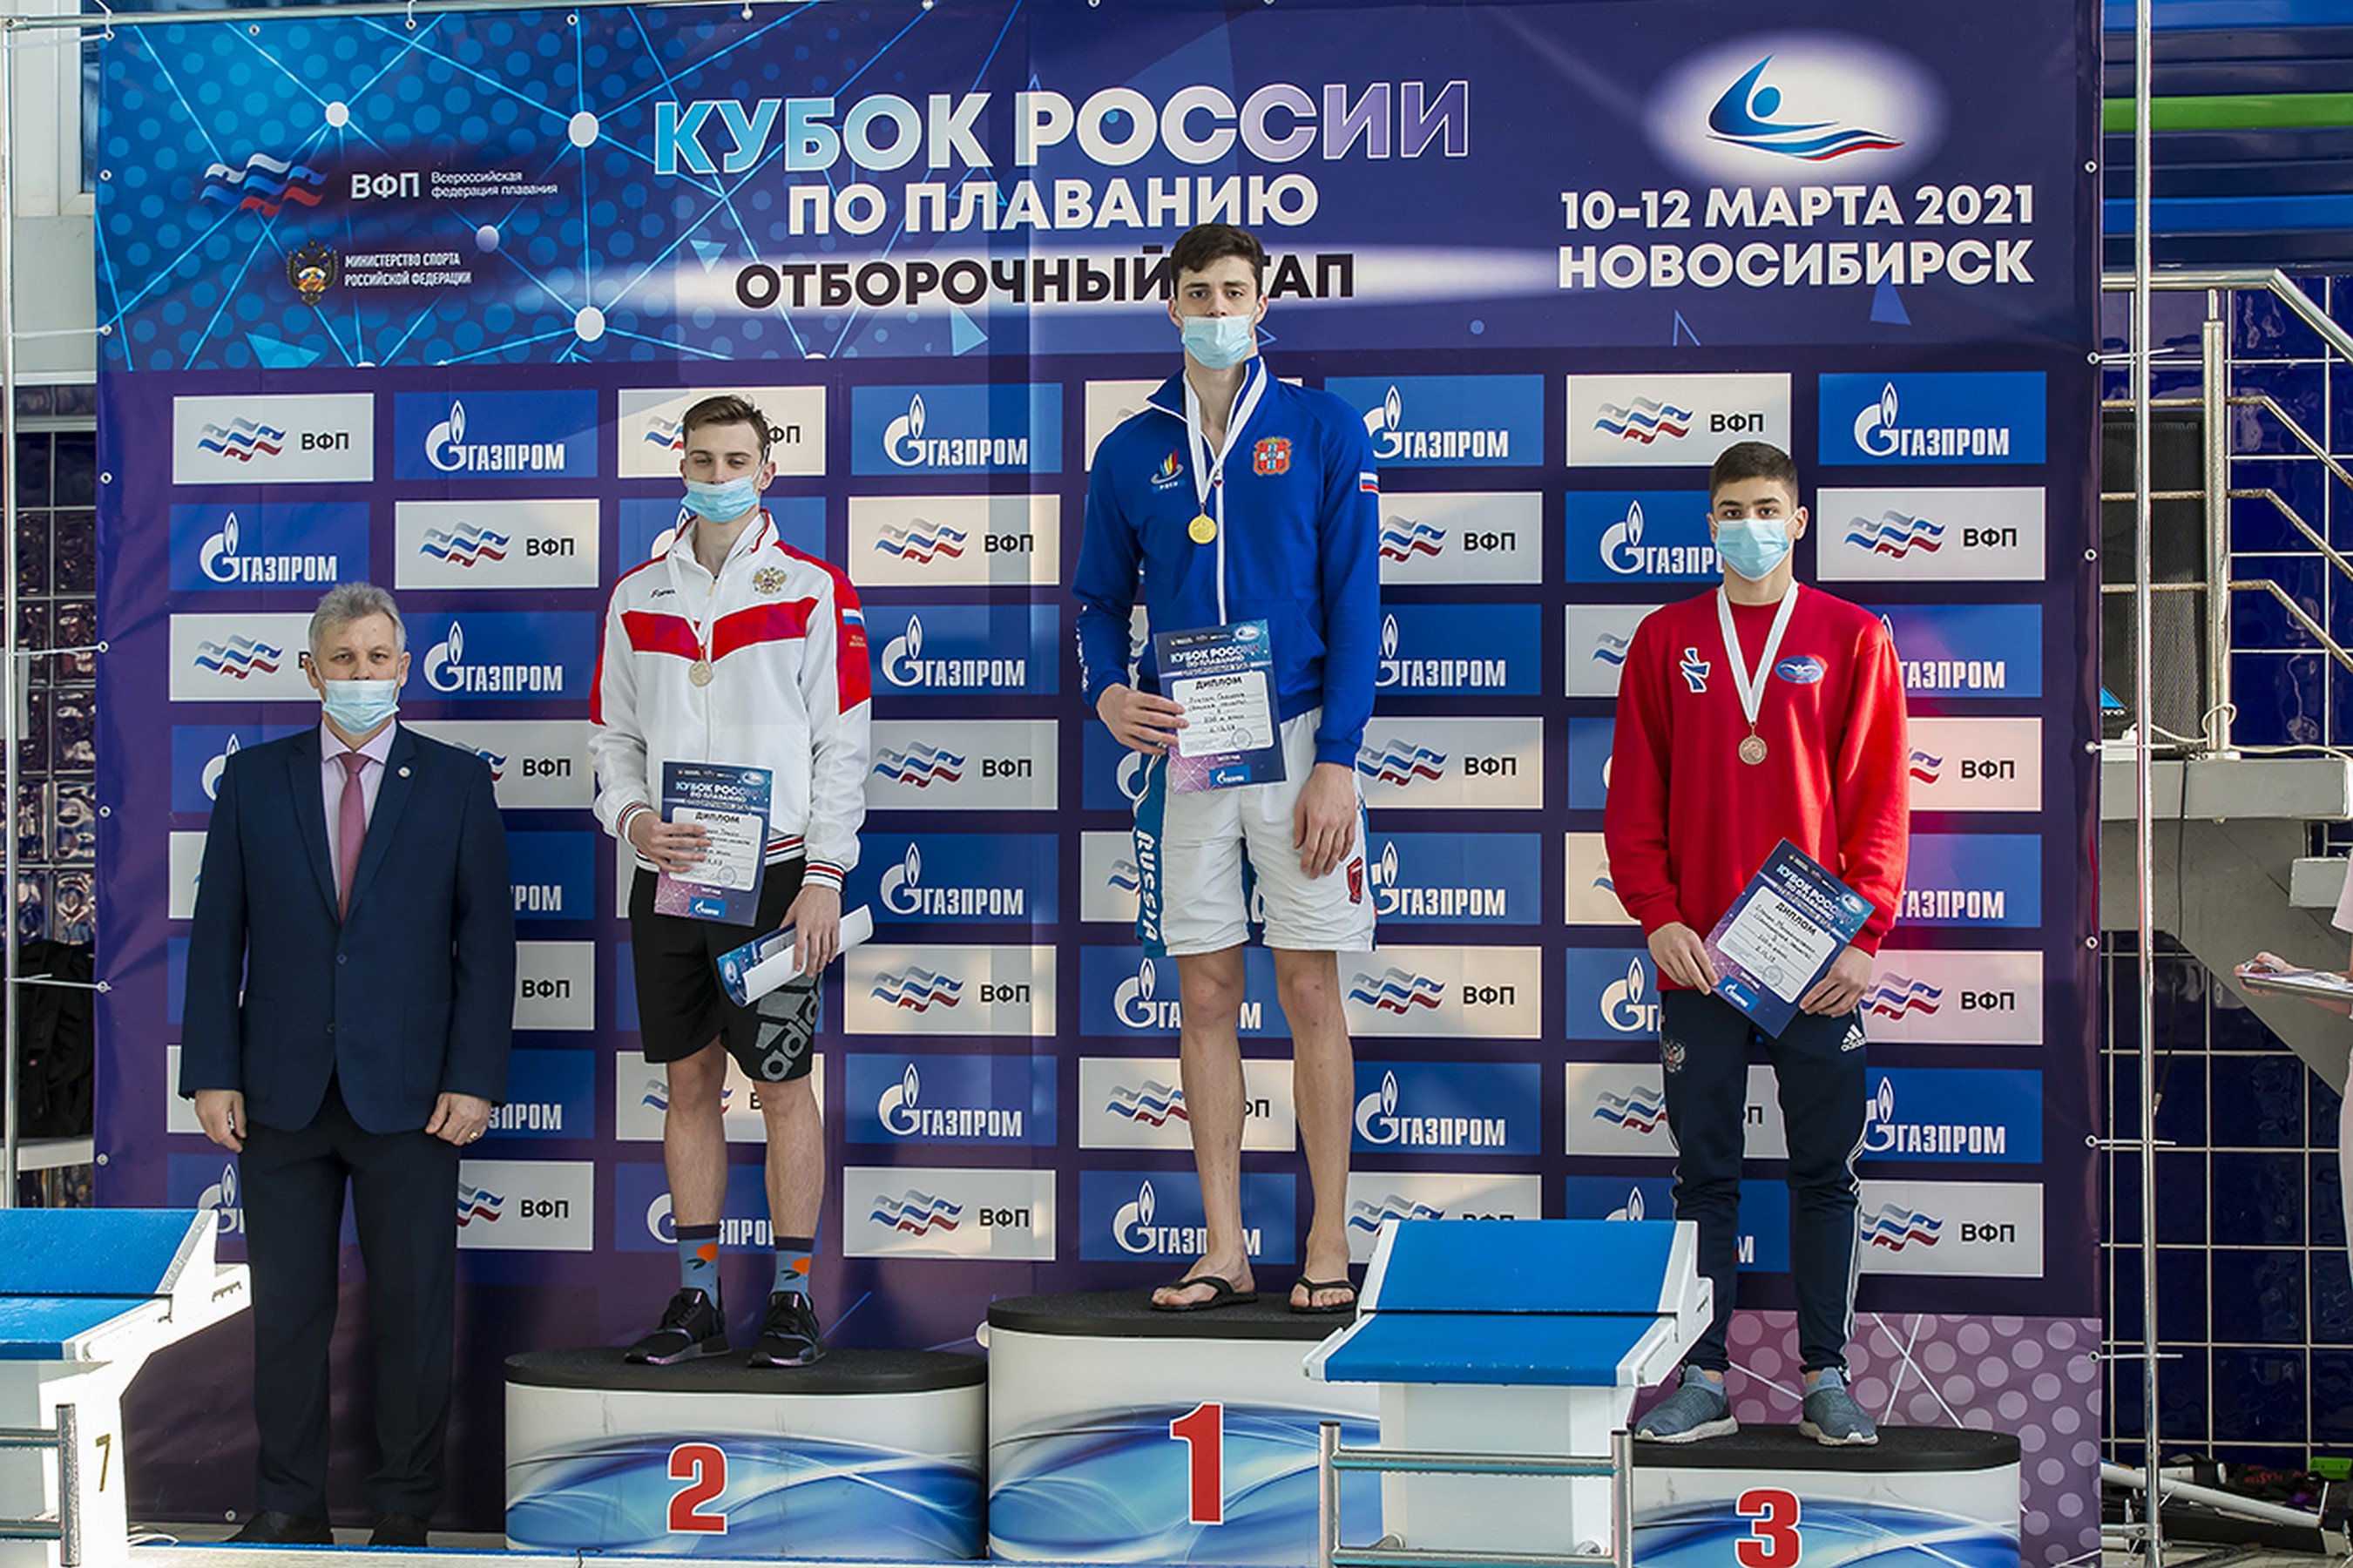 Отборочный этап Кубка России по плаванию